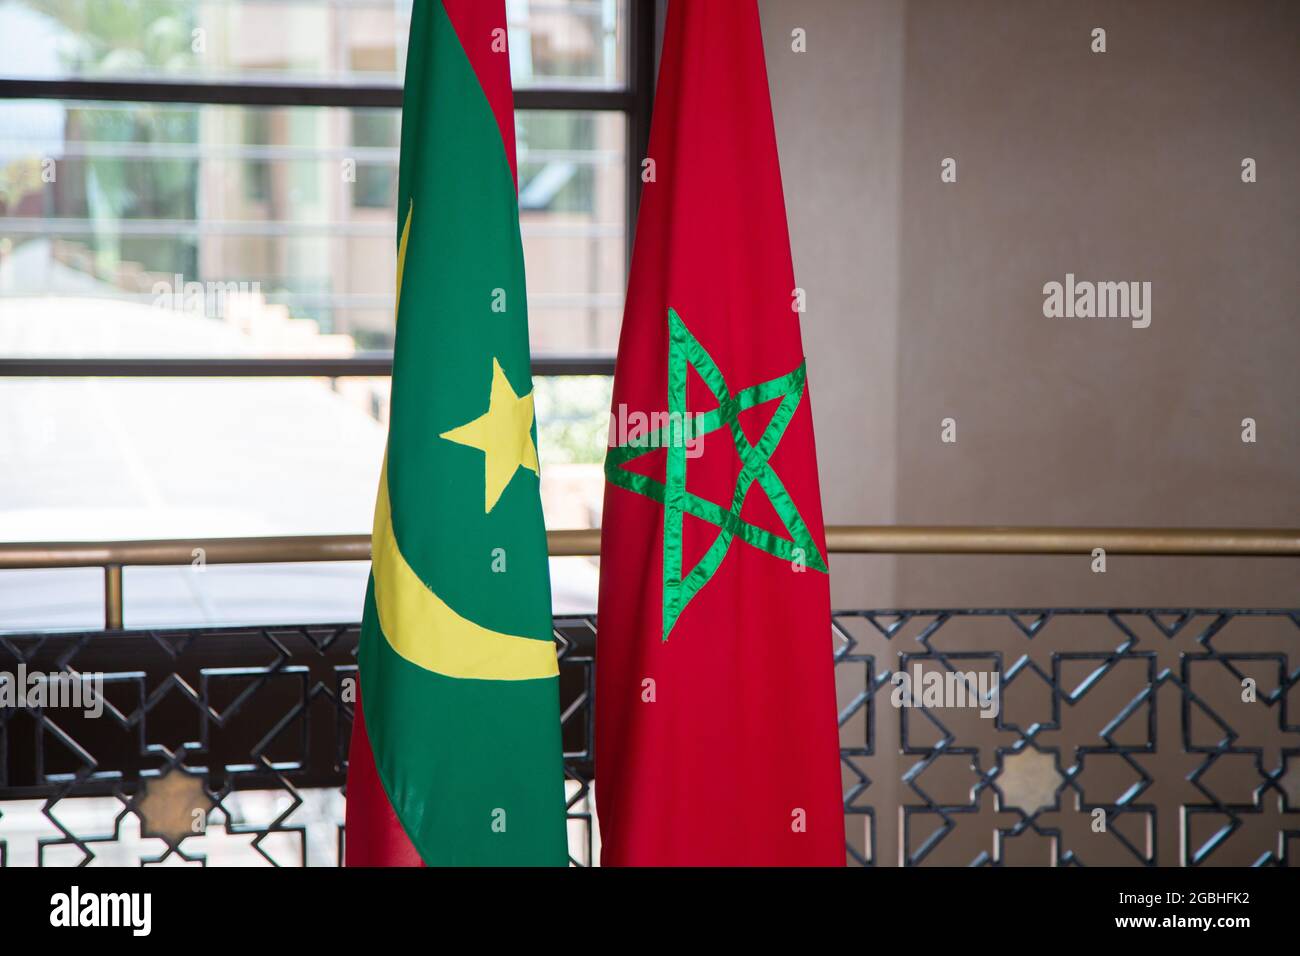 علم المغرب وموريتانيا, Flag of Morocco and Mauritania Stock Photo